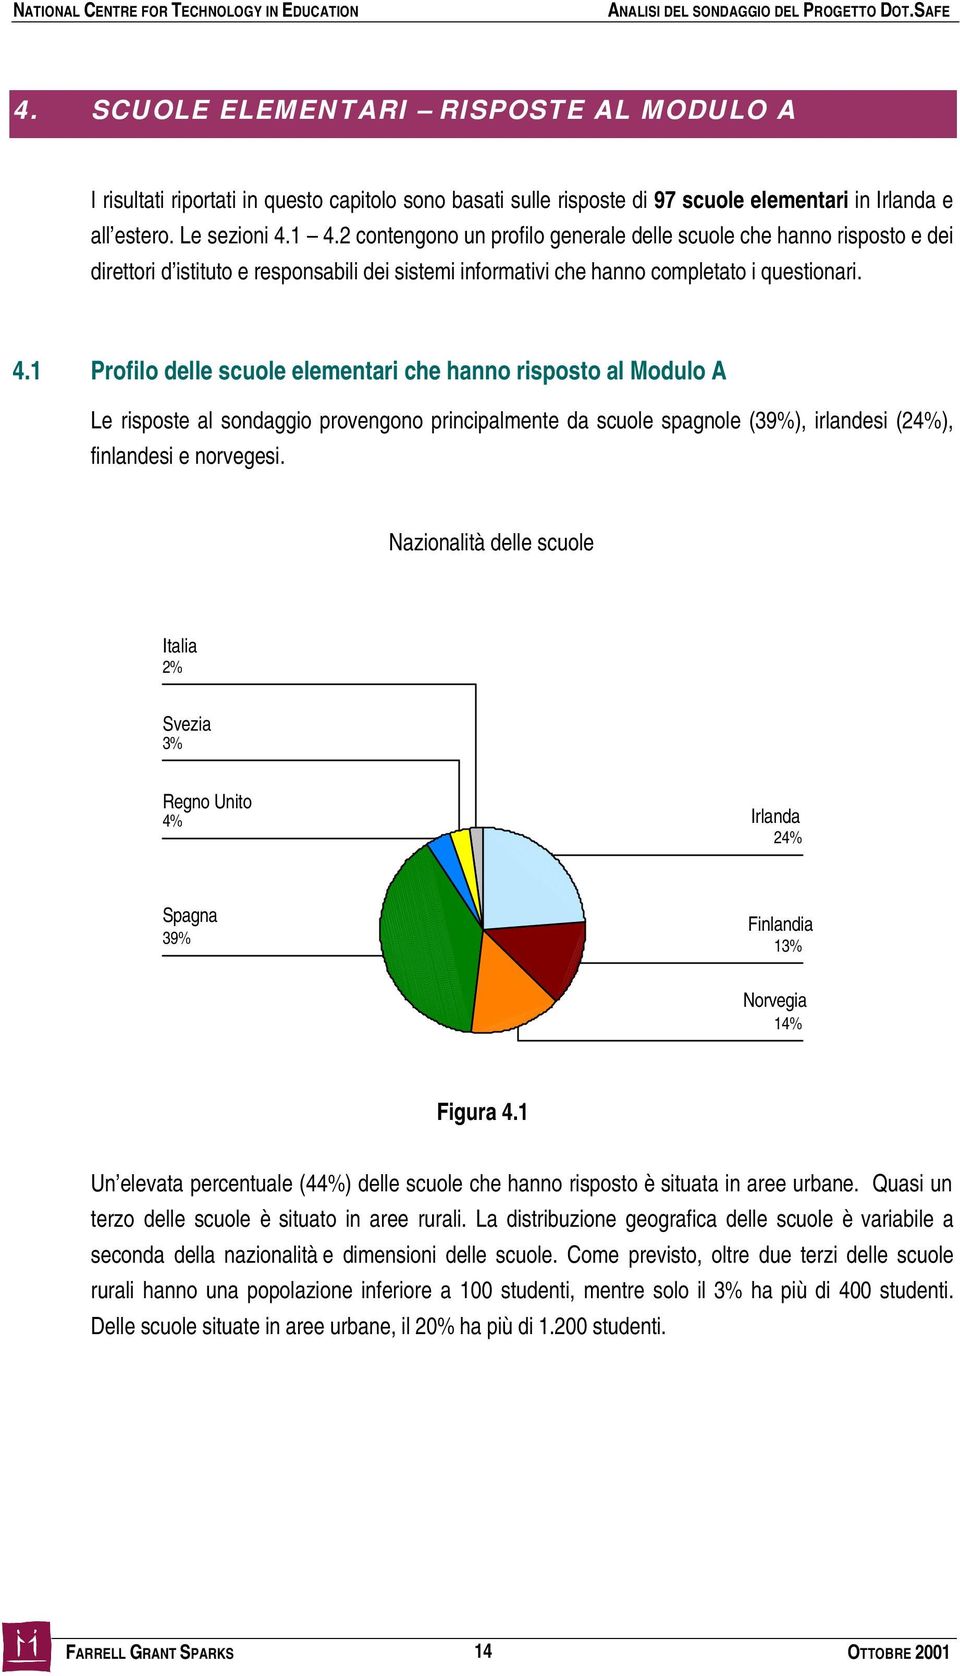 1 Profilo delle scuole elementari che hanno risposto al Modulo A Le risposte al sondaggio provengono principalmente da scuole spagnole (39%), irlandesi (24%), finlandesi e norvegesi.